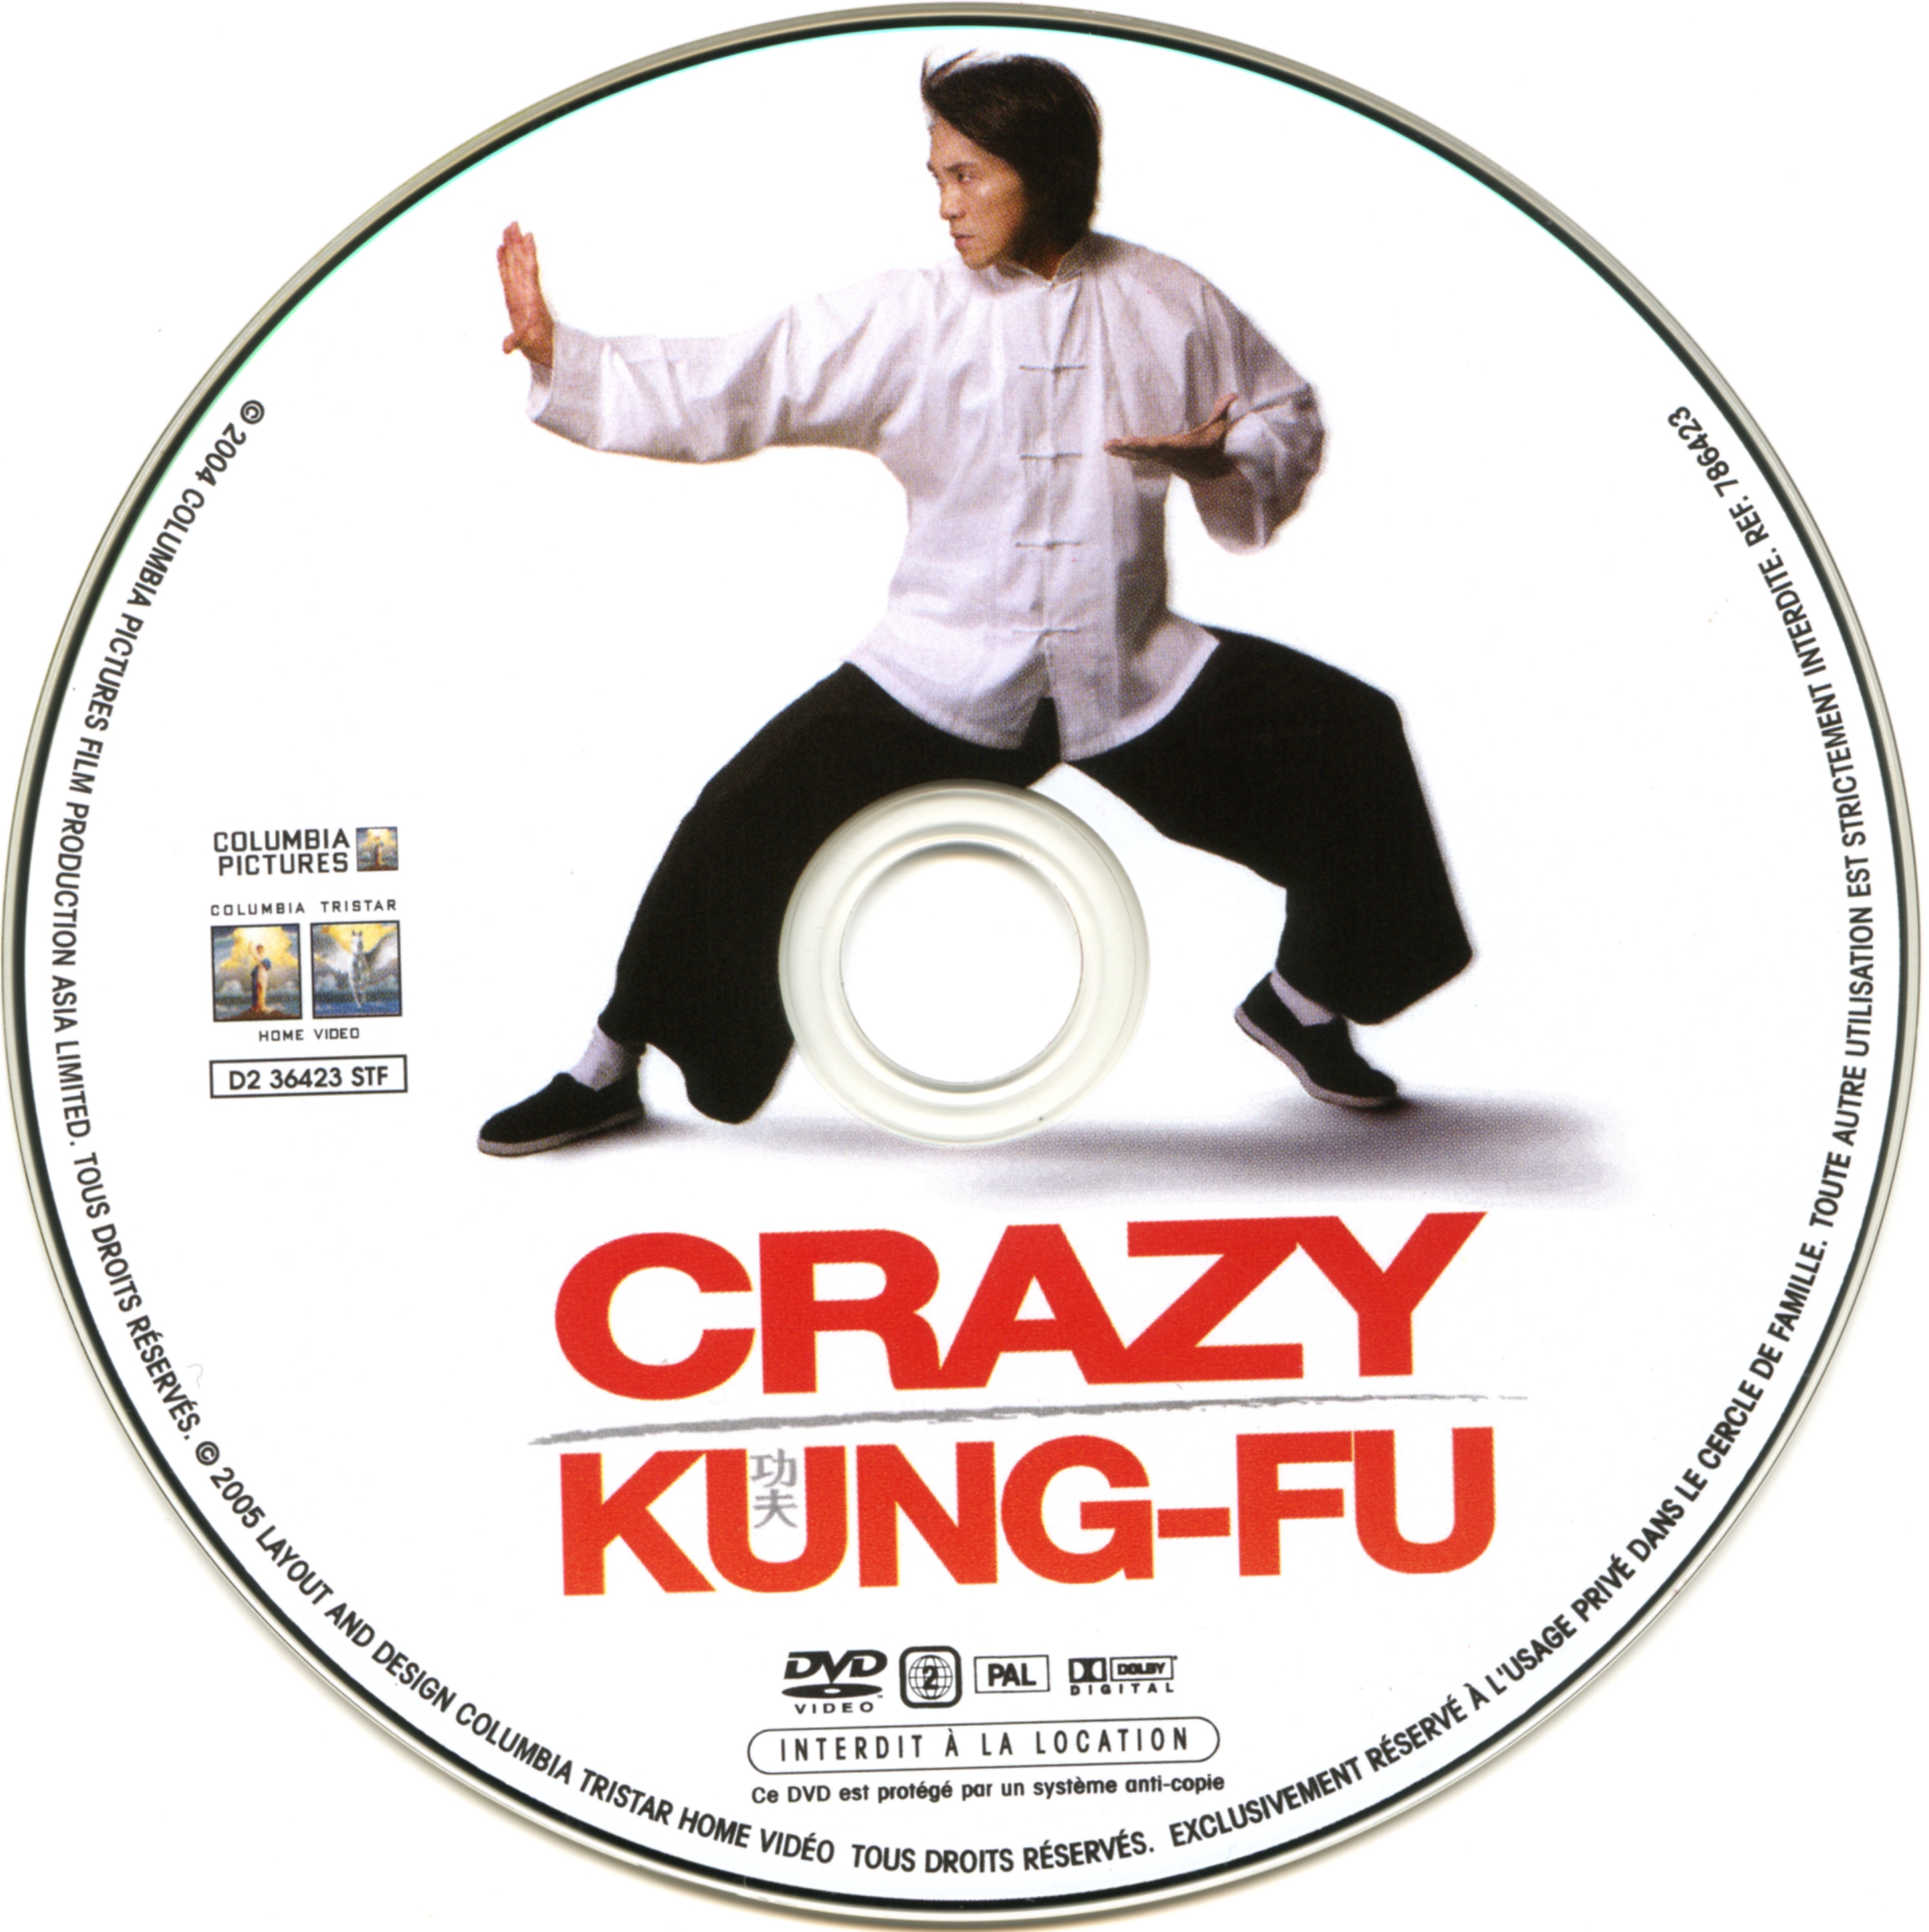 Crazy kung-fu